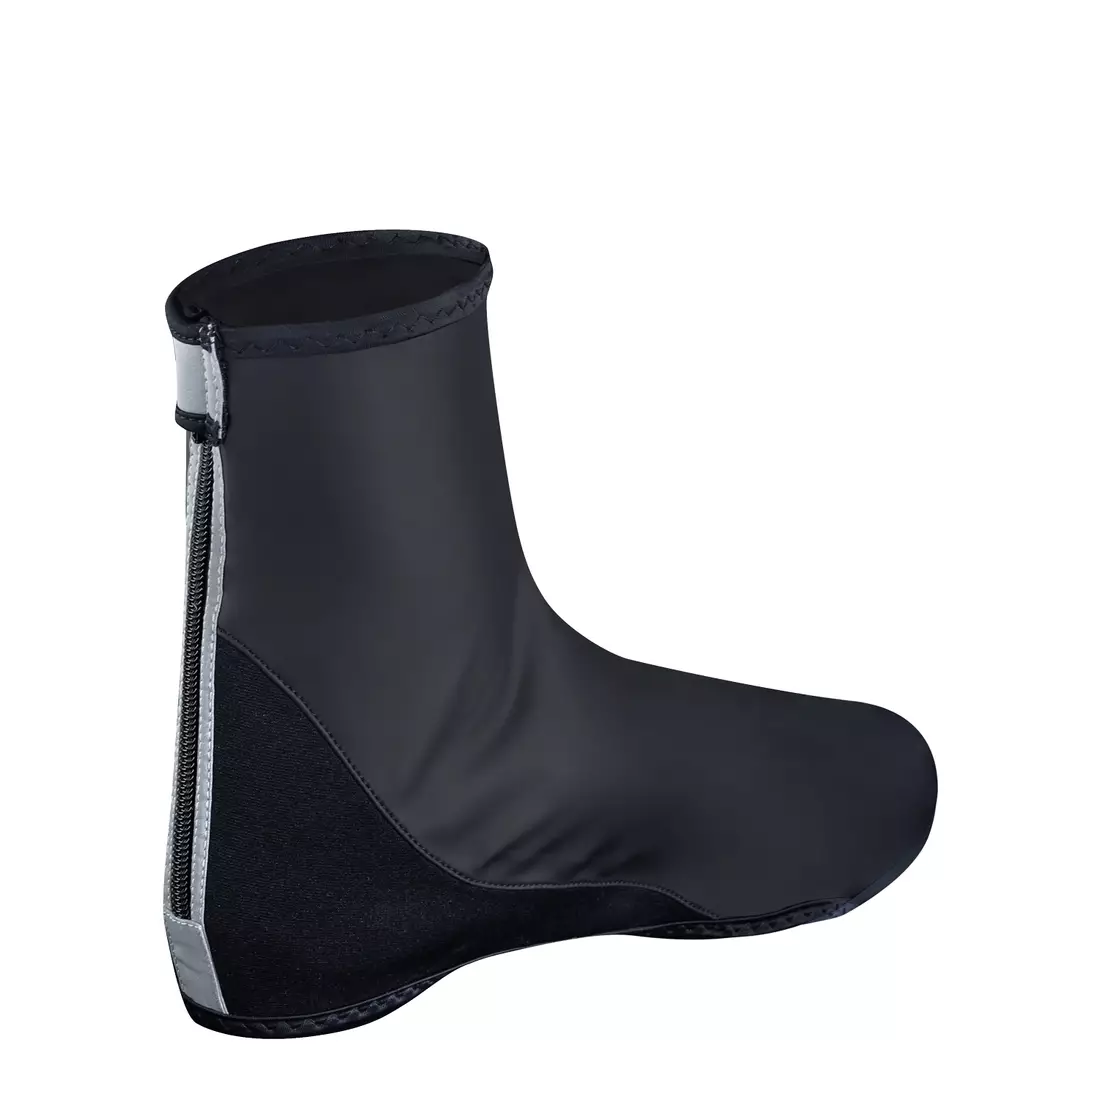 FORCE PU DRY rainproof boot protectors 906001